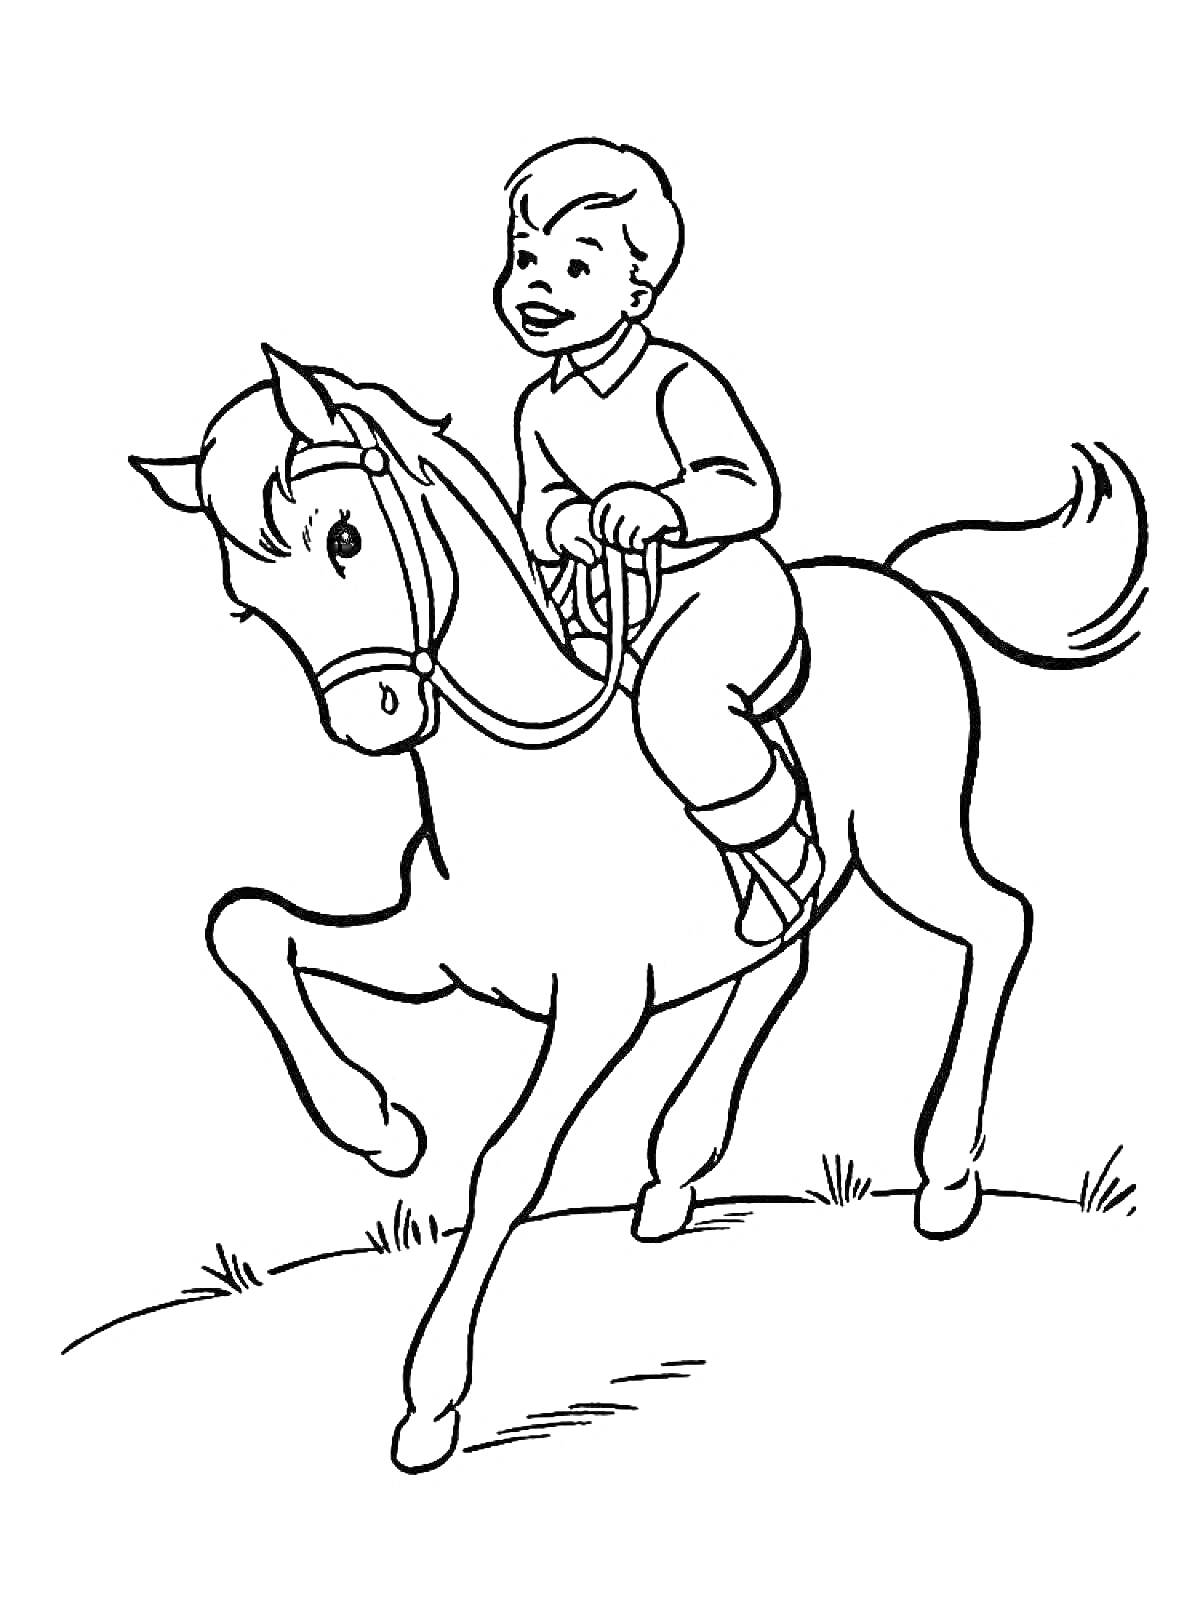 Раскраска Мальчик верхом на лошади на холме